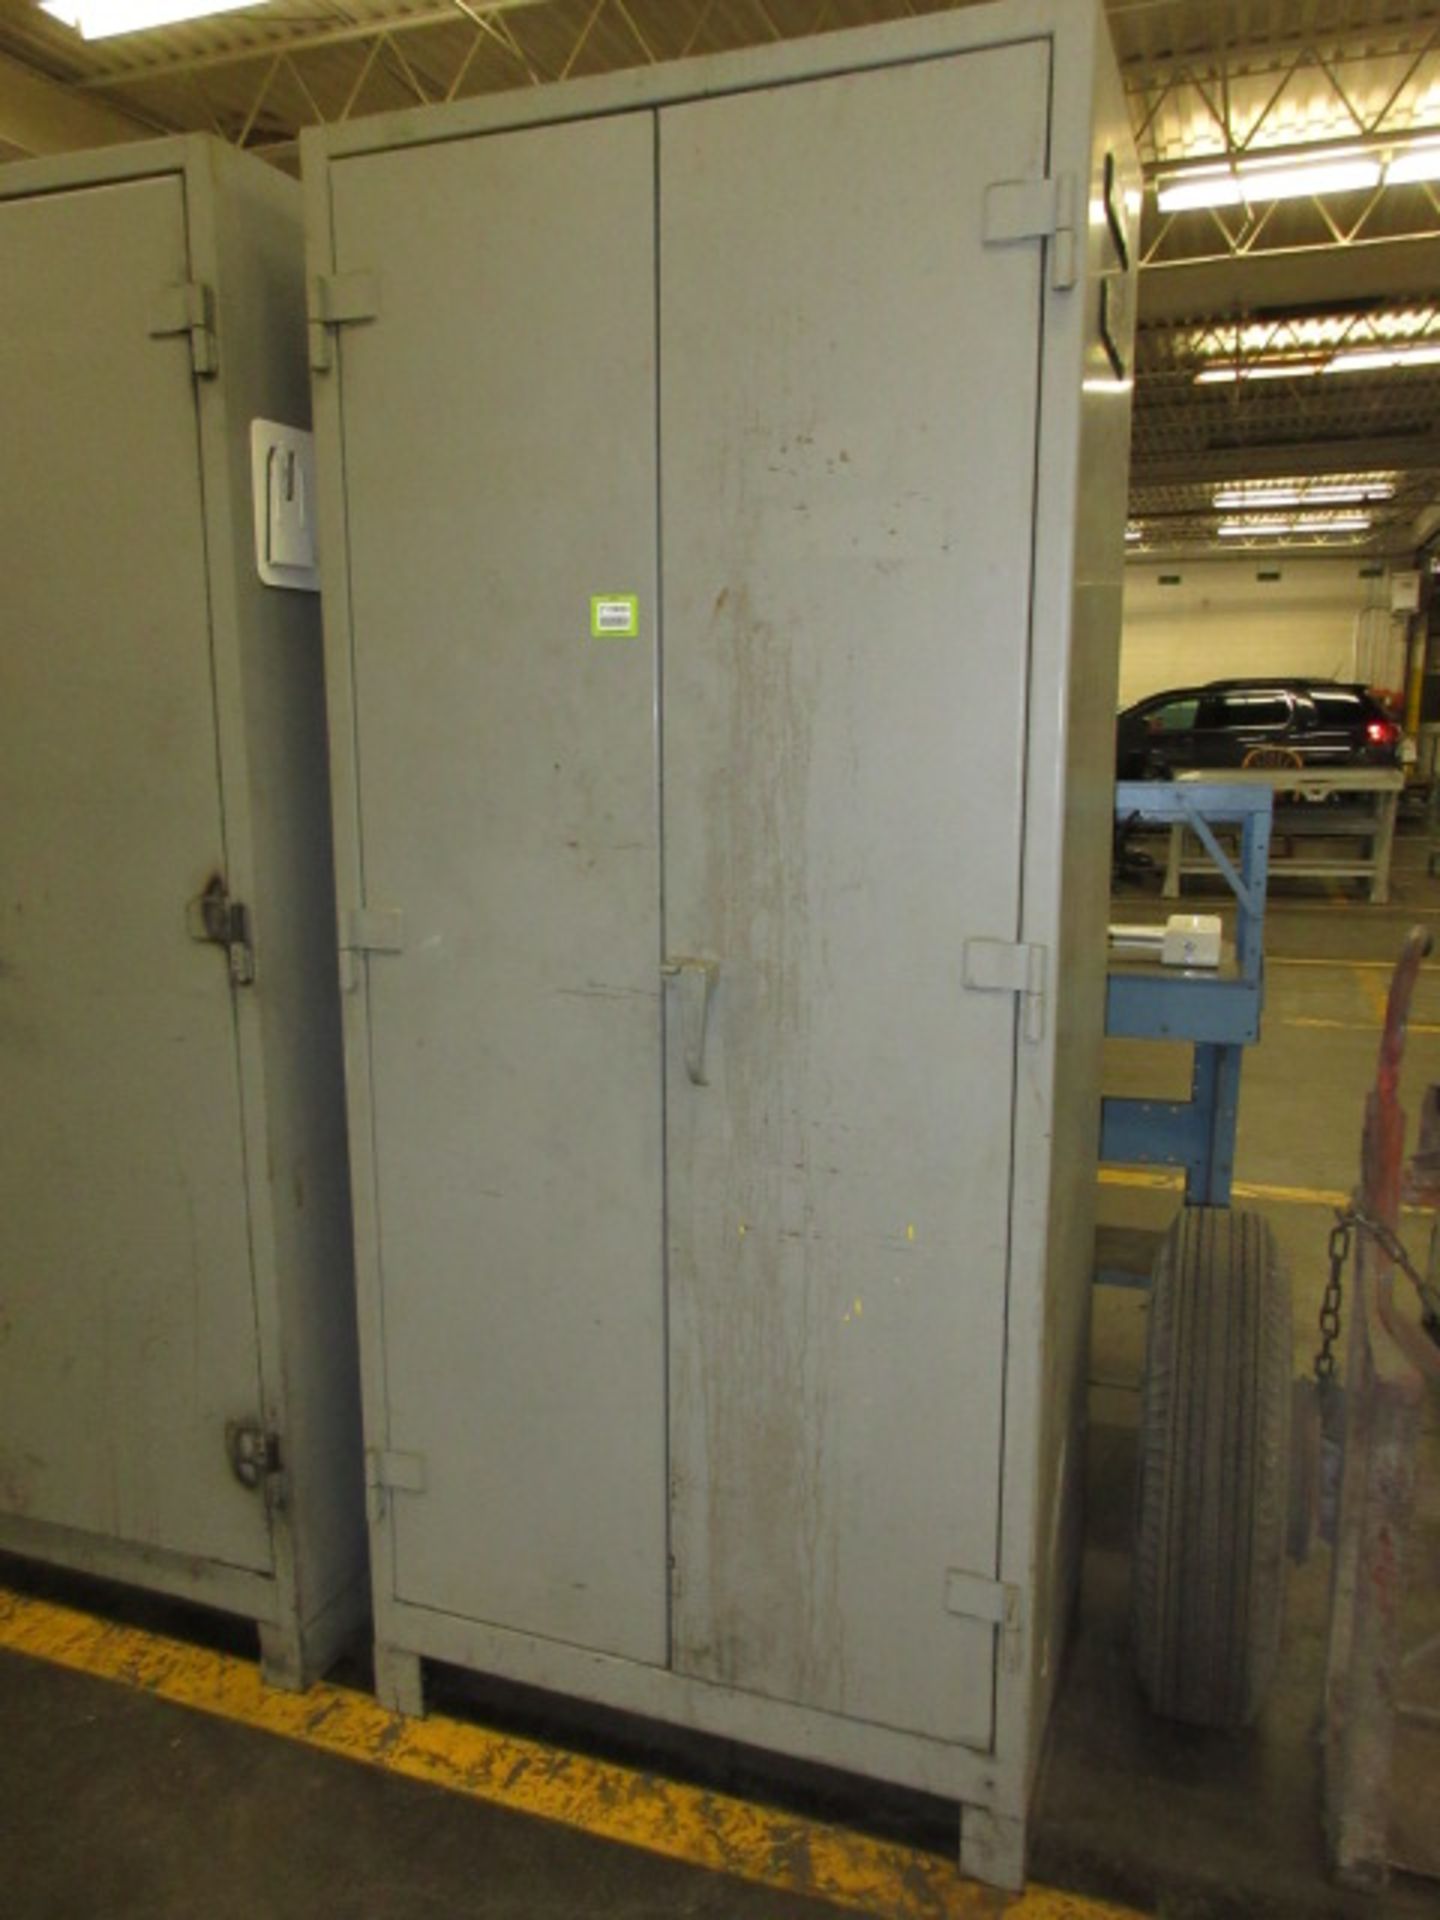 Storage Cabinet. Lyon Heavy Duty Storage Cabinet, 36 x 21 x 82h. HIT# 2179039. Loc: main floor.